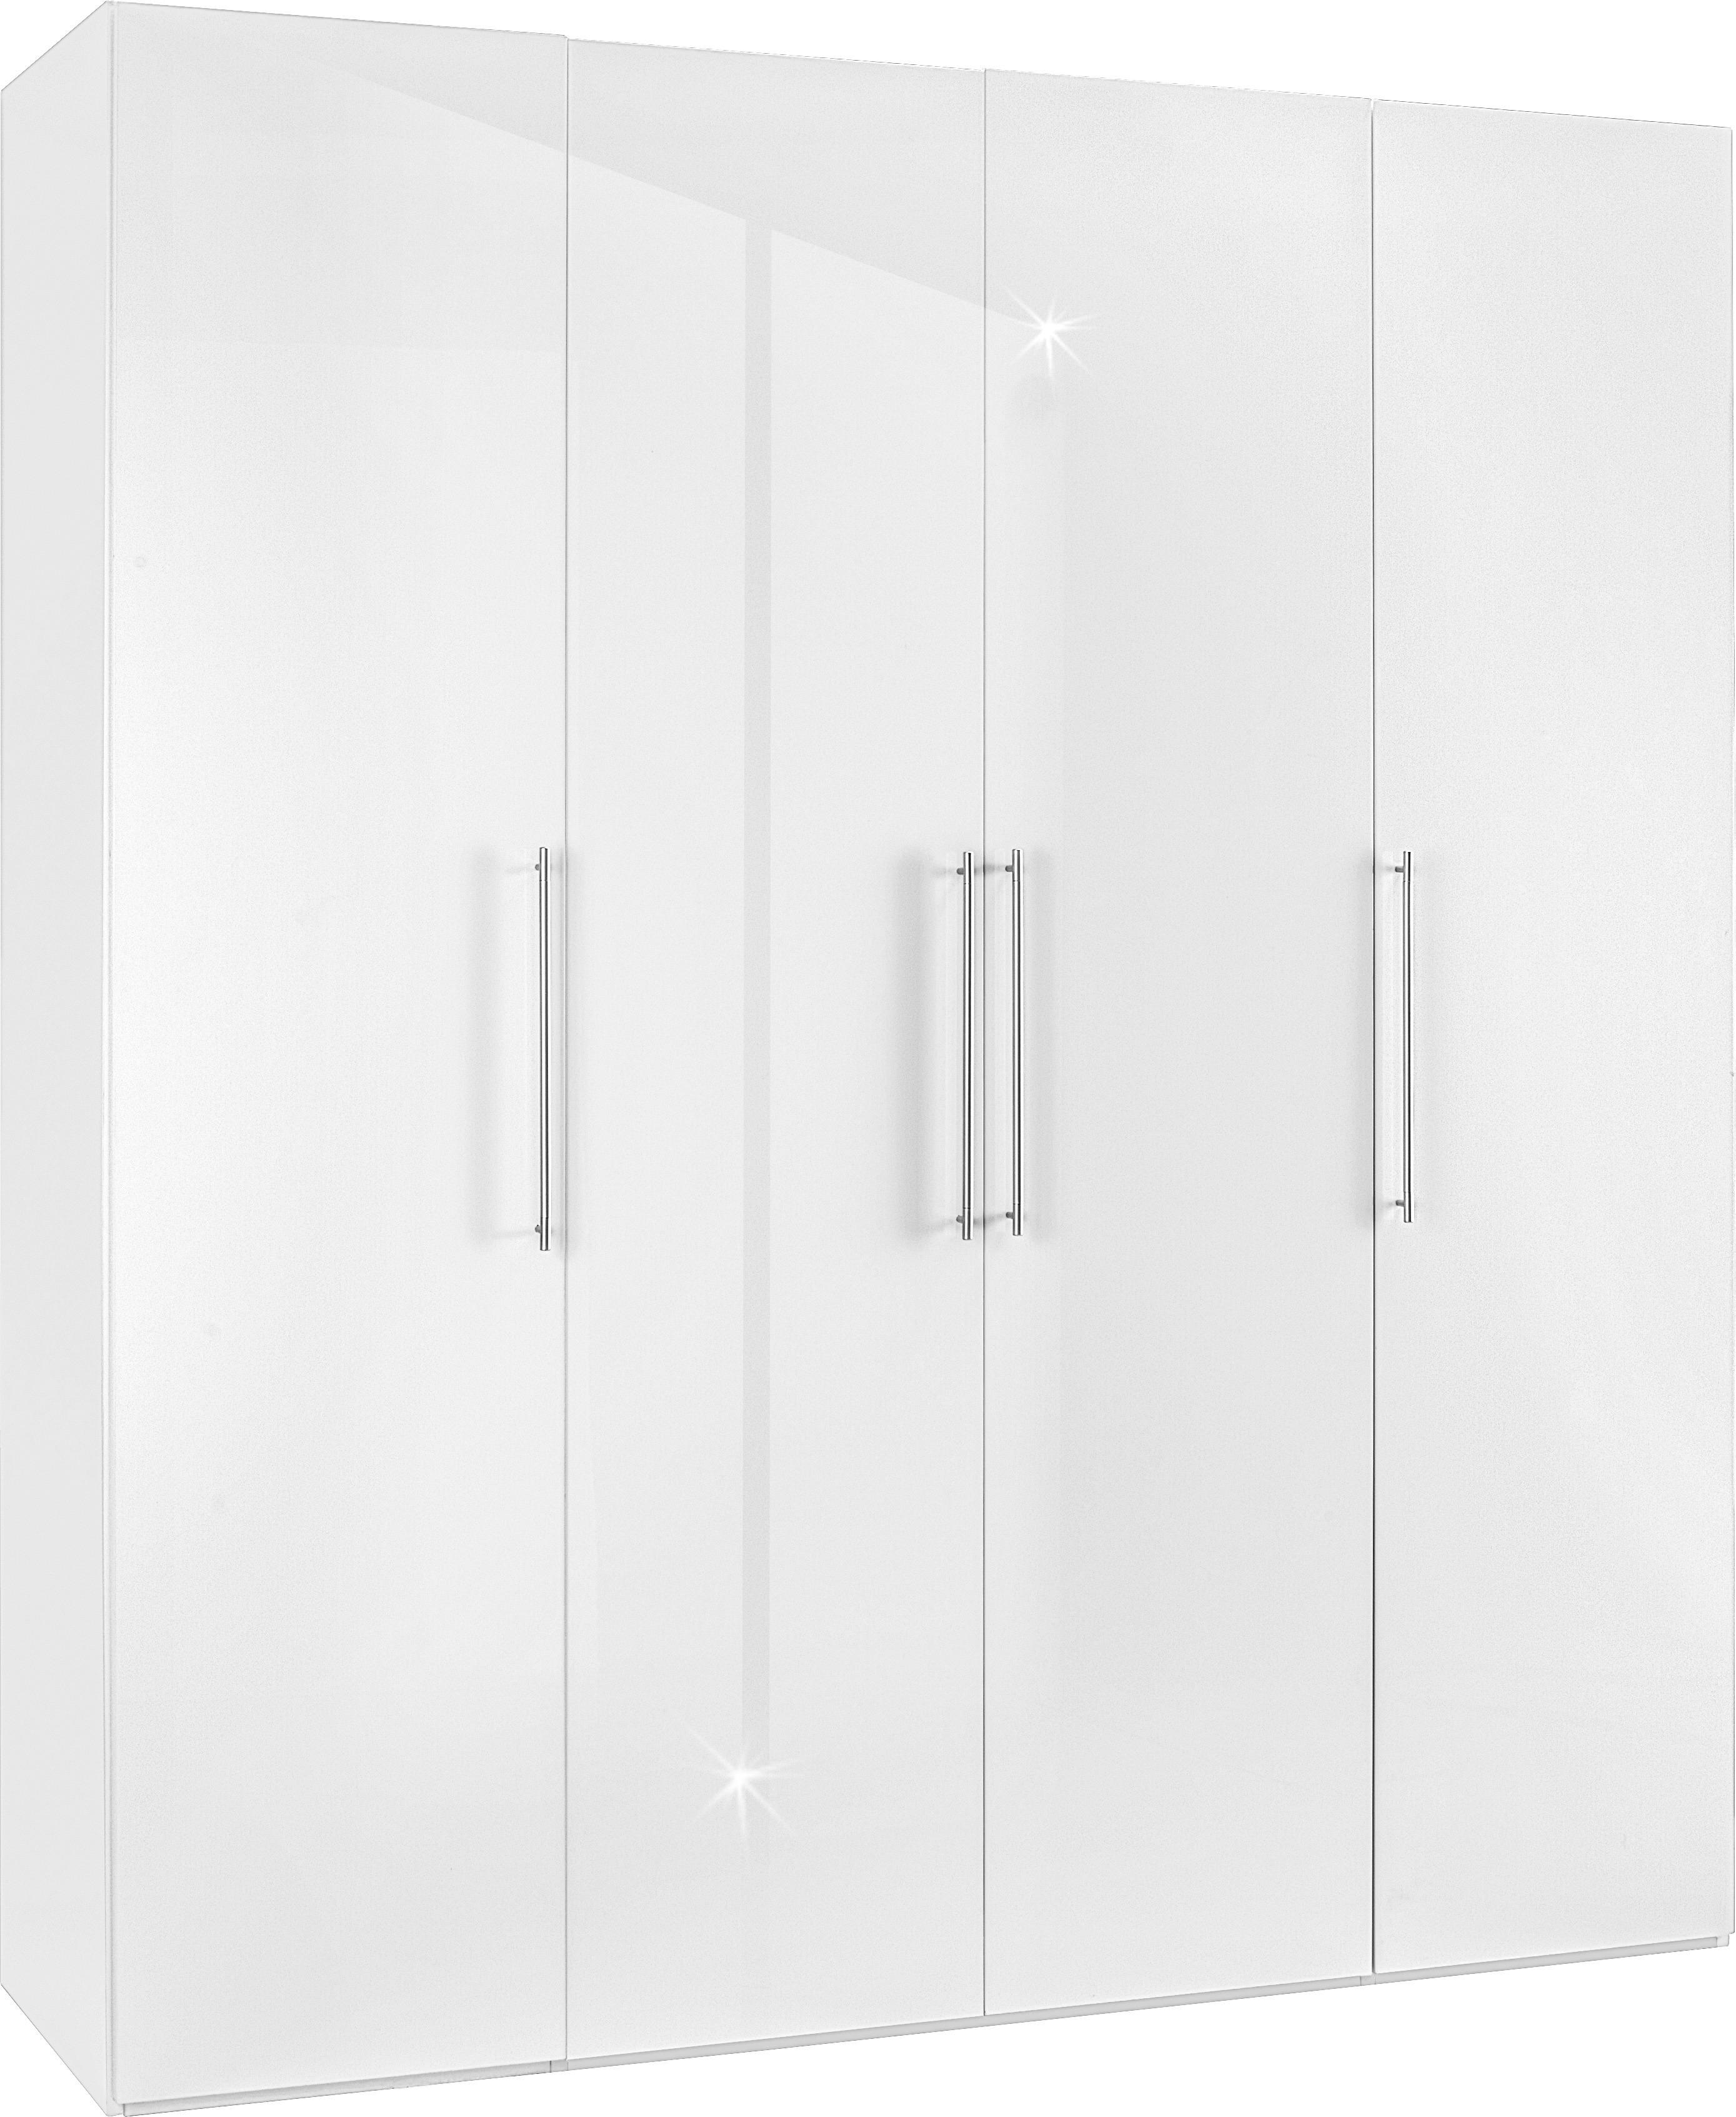 Drehtürenschrank in Weiß - Chromfarben/Weiß, MODERN, Holzwerkstoff/Metall (196/219/60cm) - Modern Living